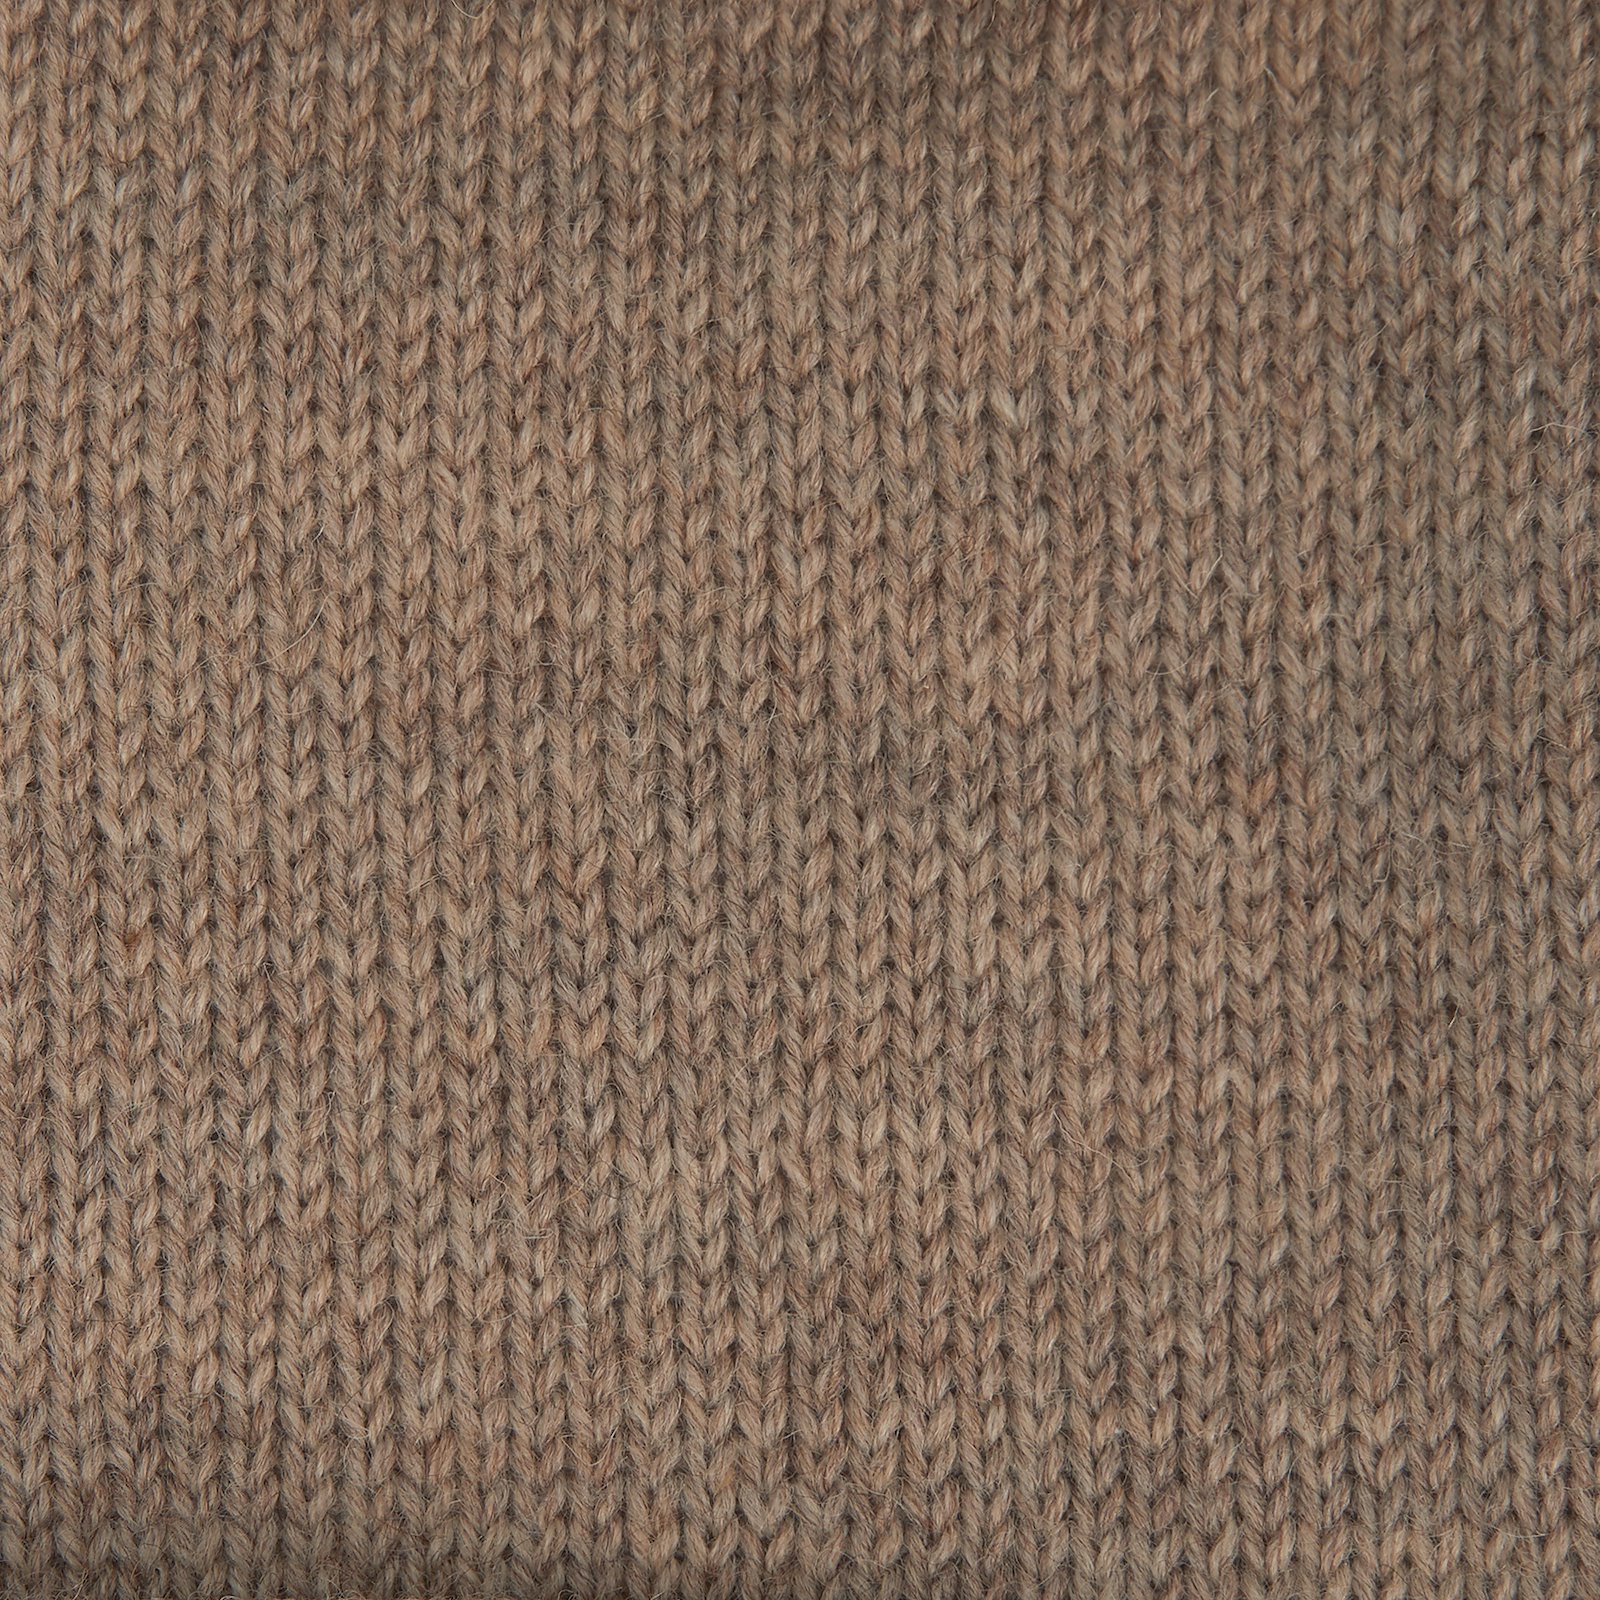 FRAYA, wool yarn "Reliable", beige melange  90001183_pack_b